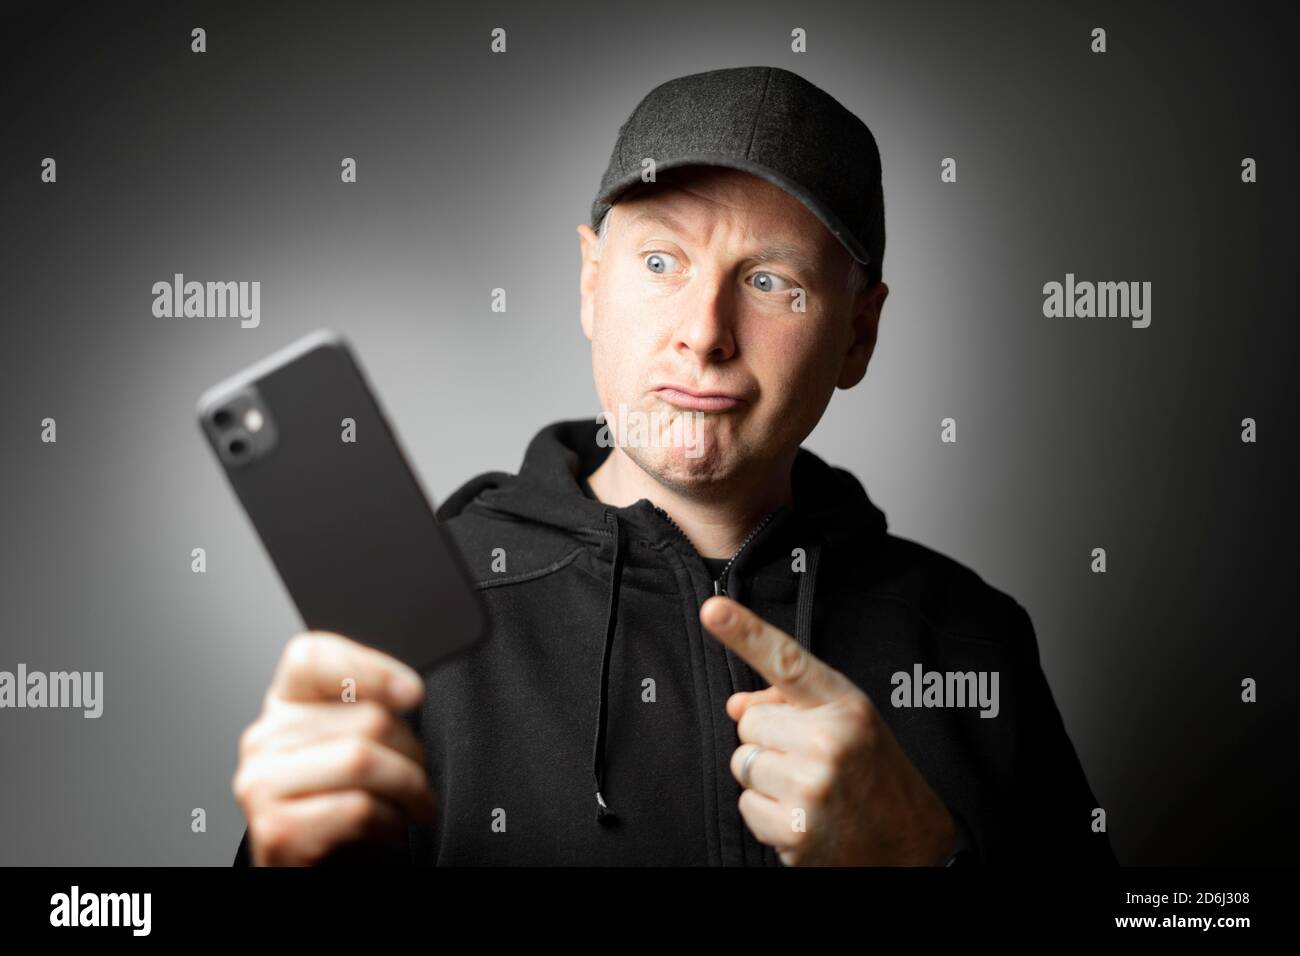 Mann in schwarzer Kleidung, der auf die Nachricht auf dem Telefon oder auf dem Telefon zeigt Stockfoto